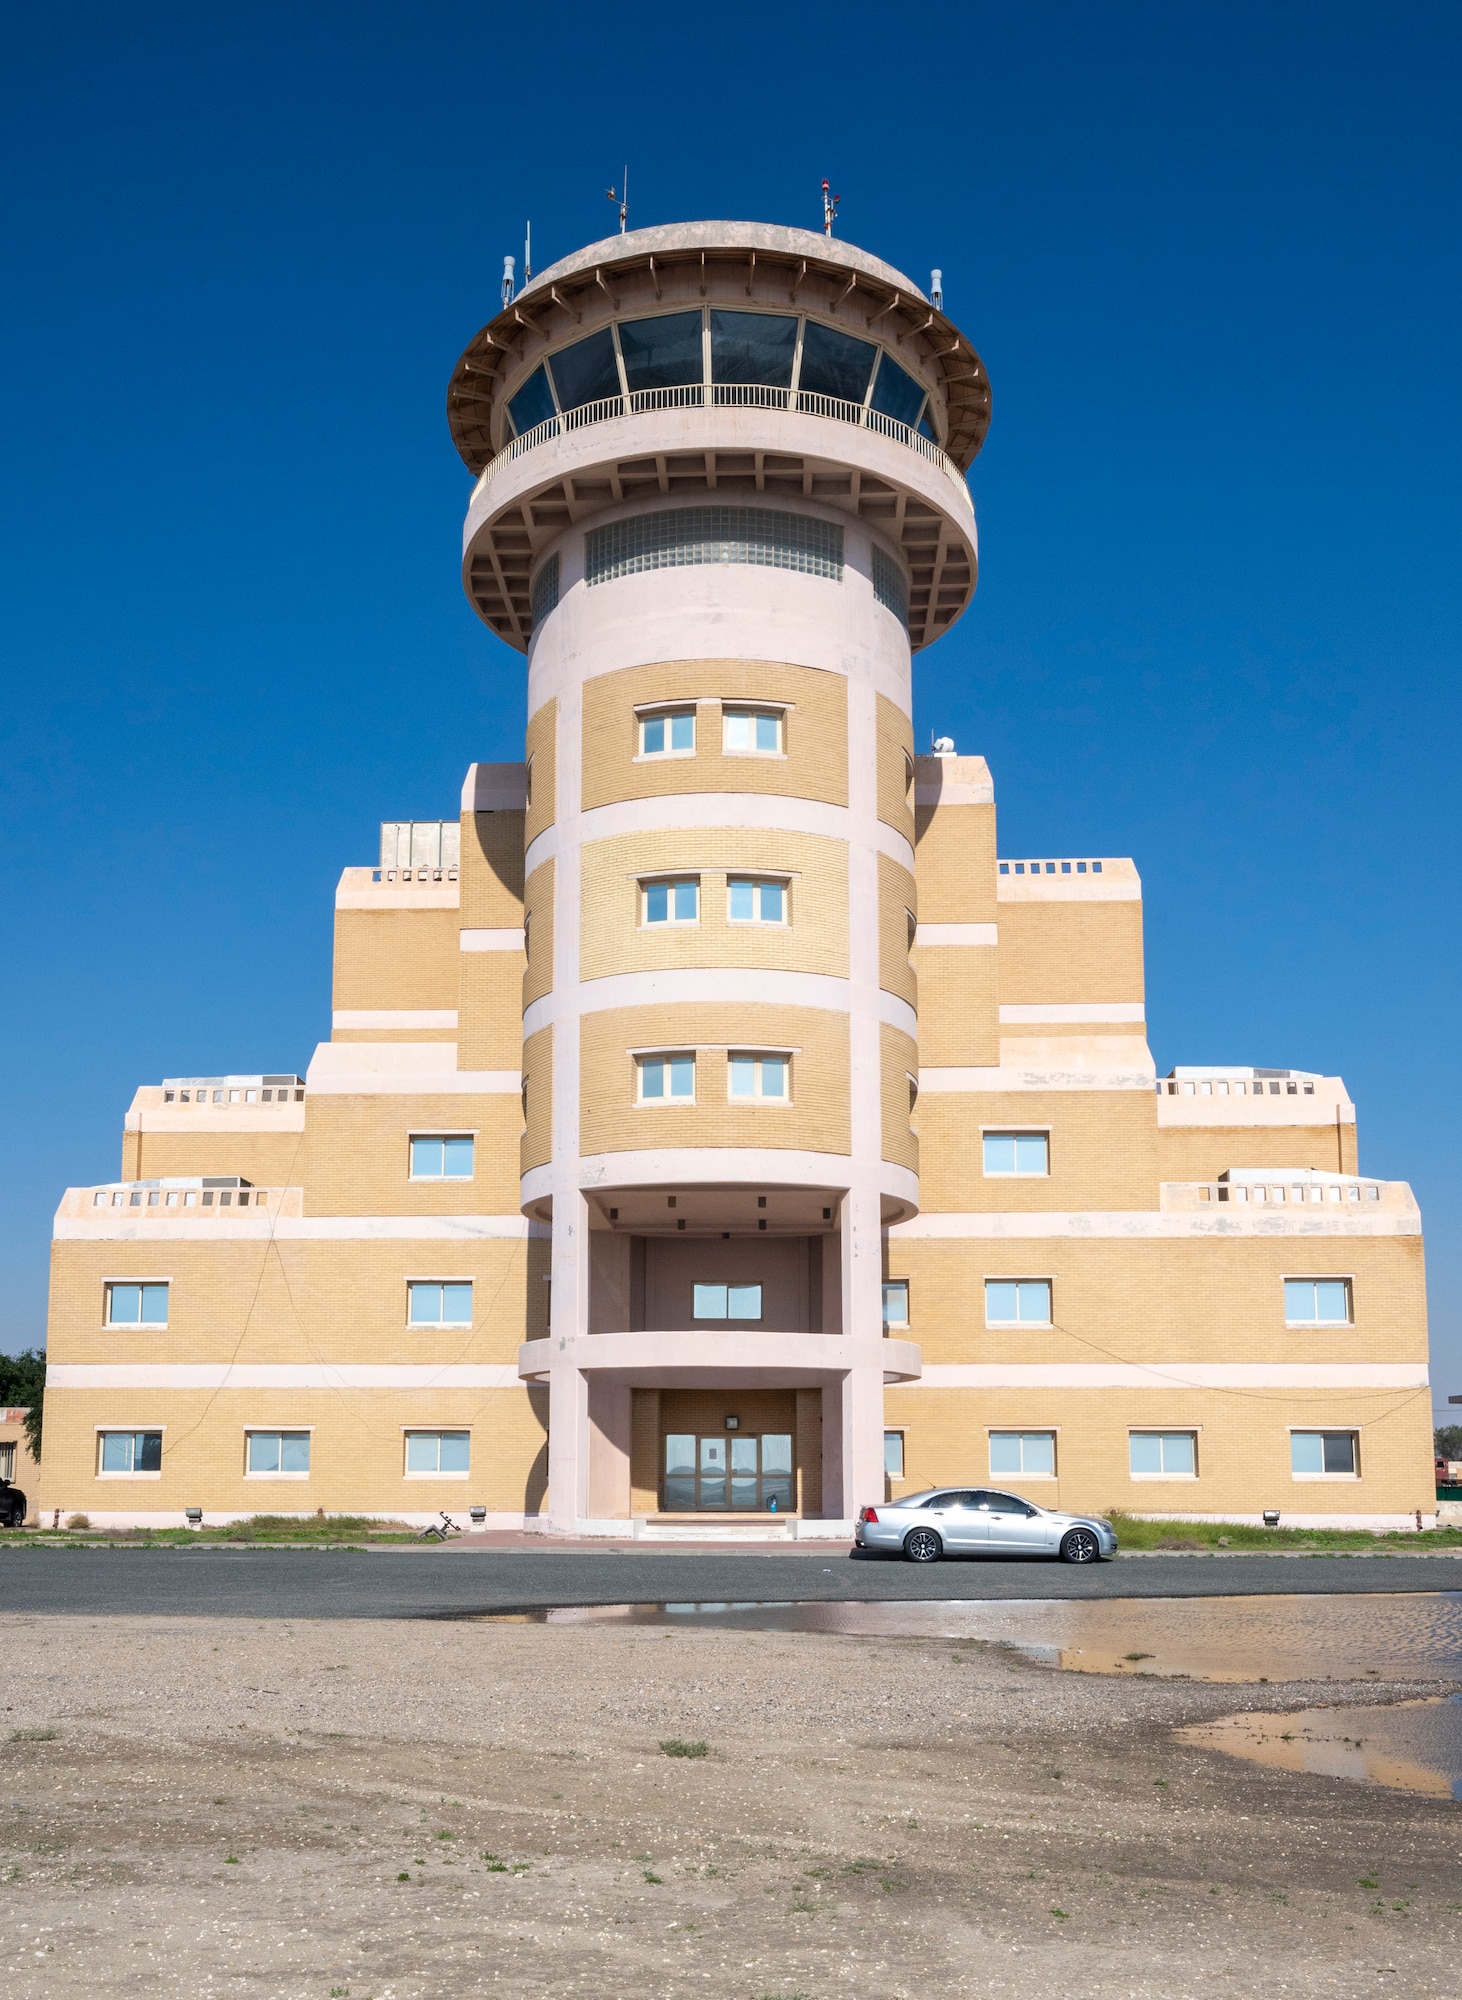 قاعدة علي السالم الجوية ، شراكة الكويت تجلب تحسينات برج مراقبة الحركة الجوية> قيادة القتال الجوي> عرض المقال